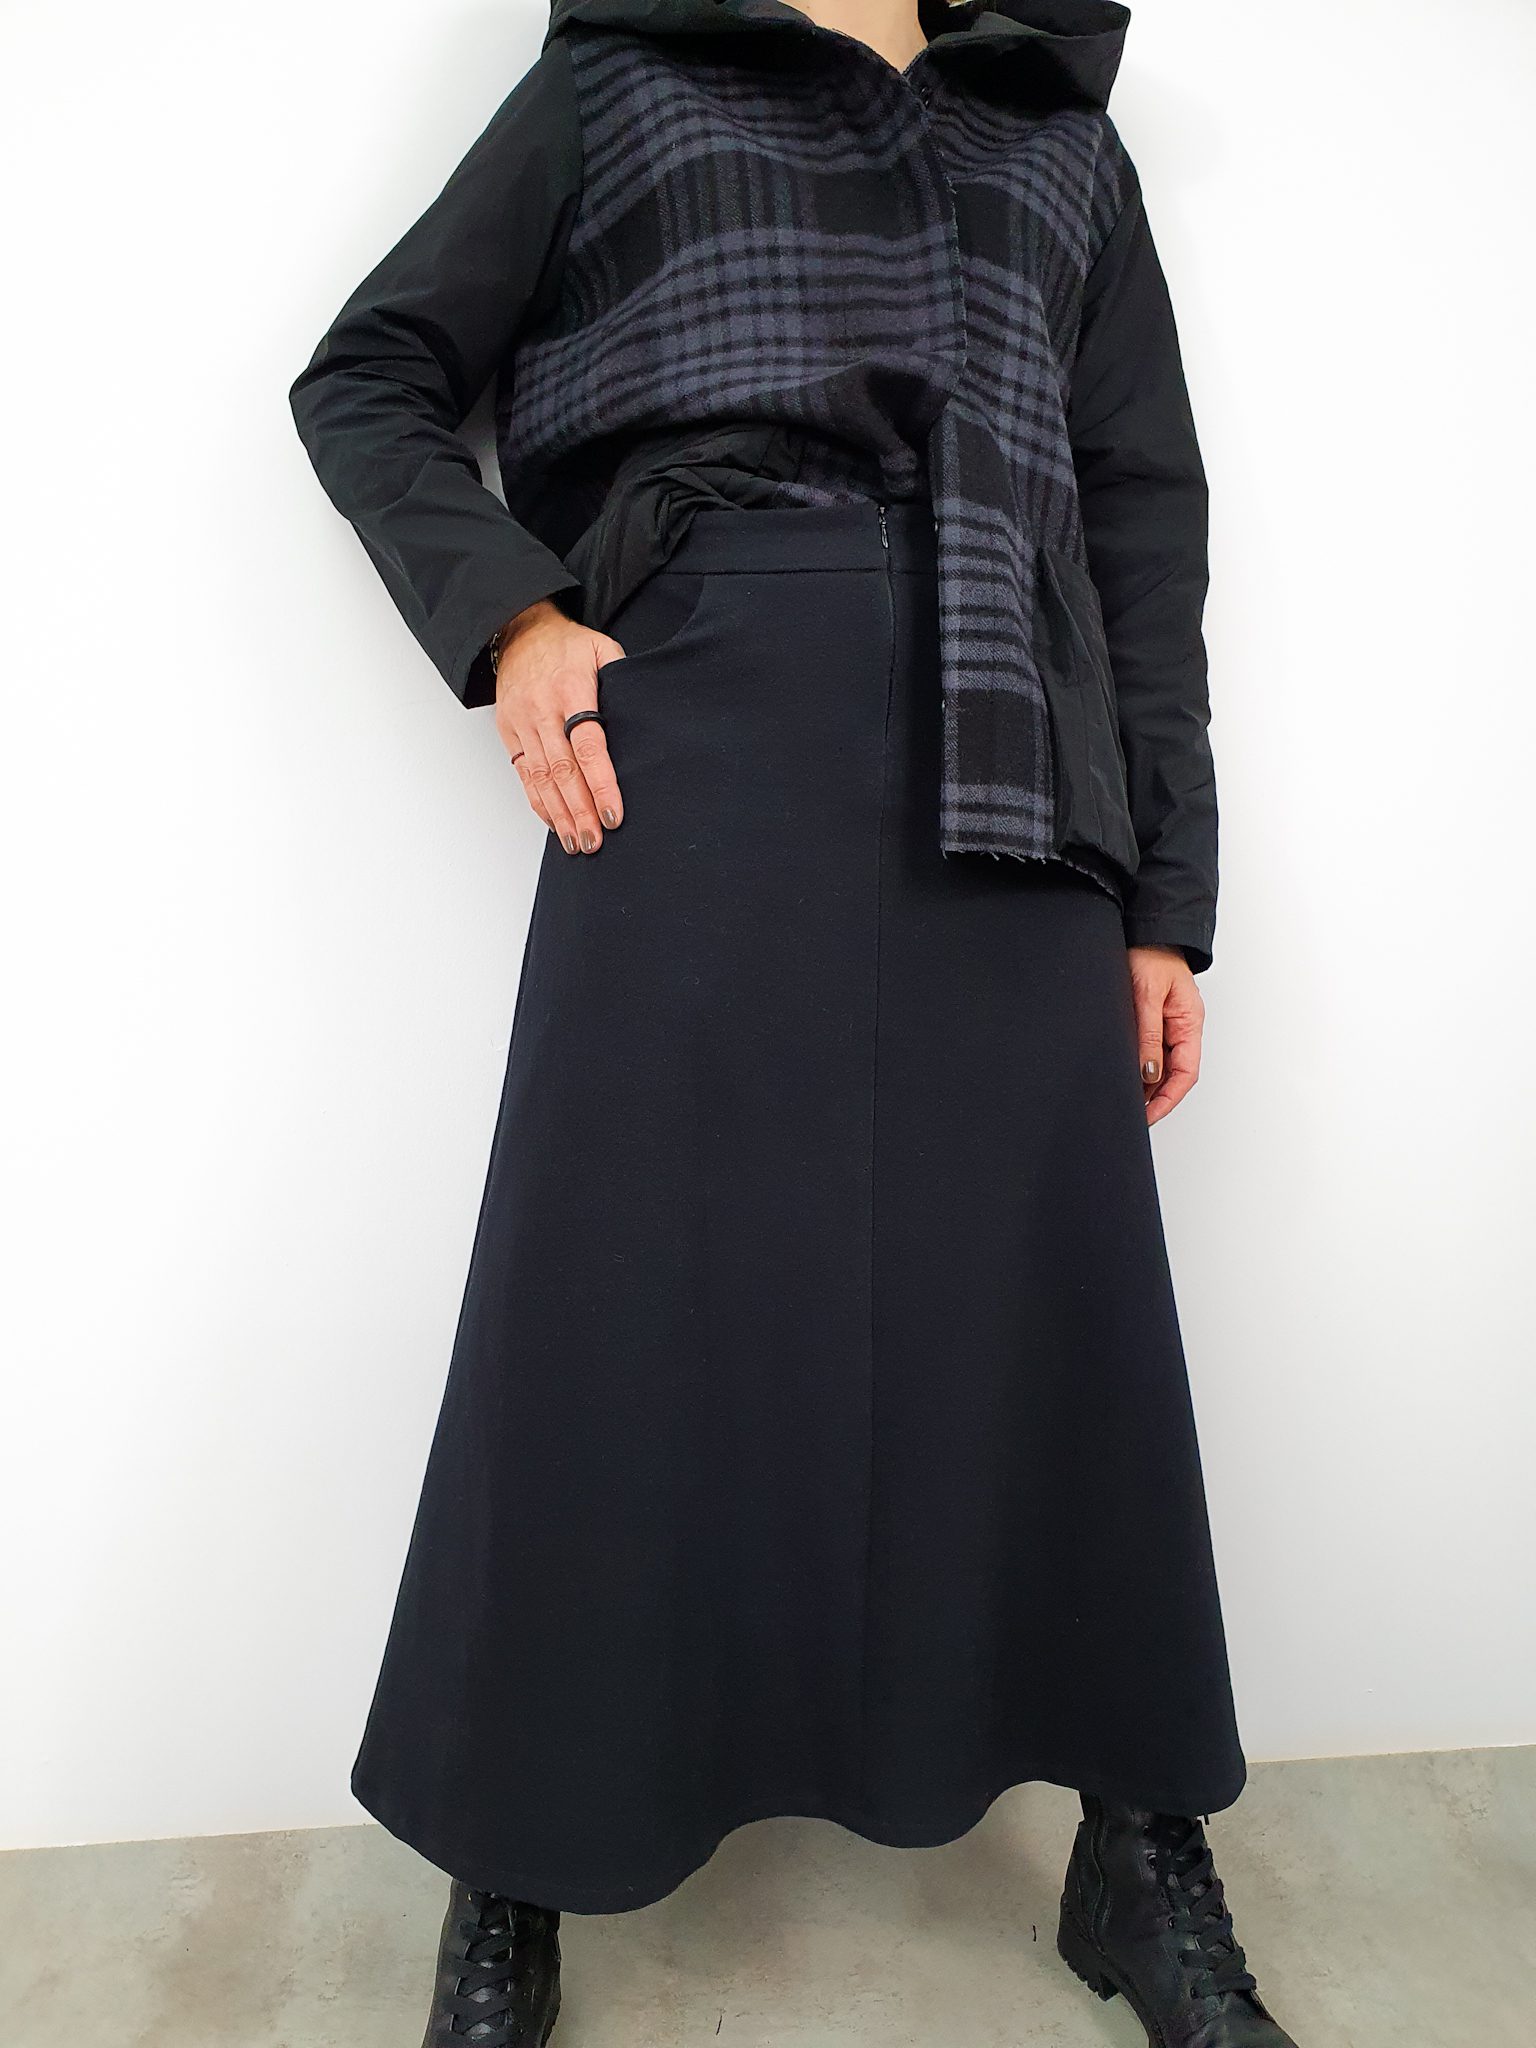 Moda Autorska Slow Fashion BezAle - bezale spodnica panienka z okienka1 1